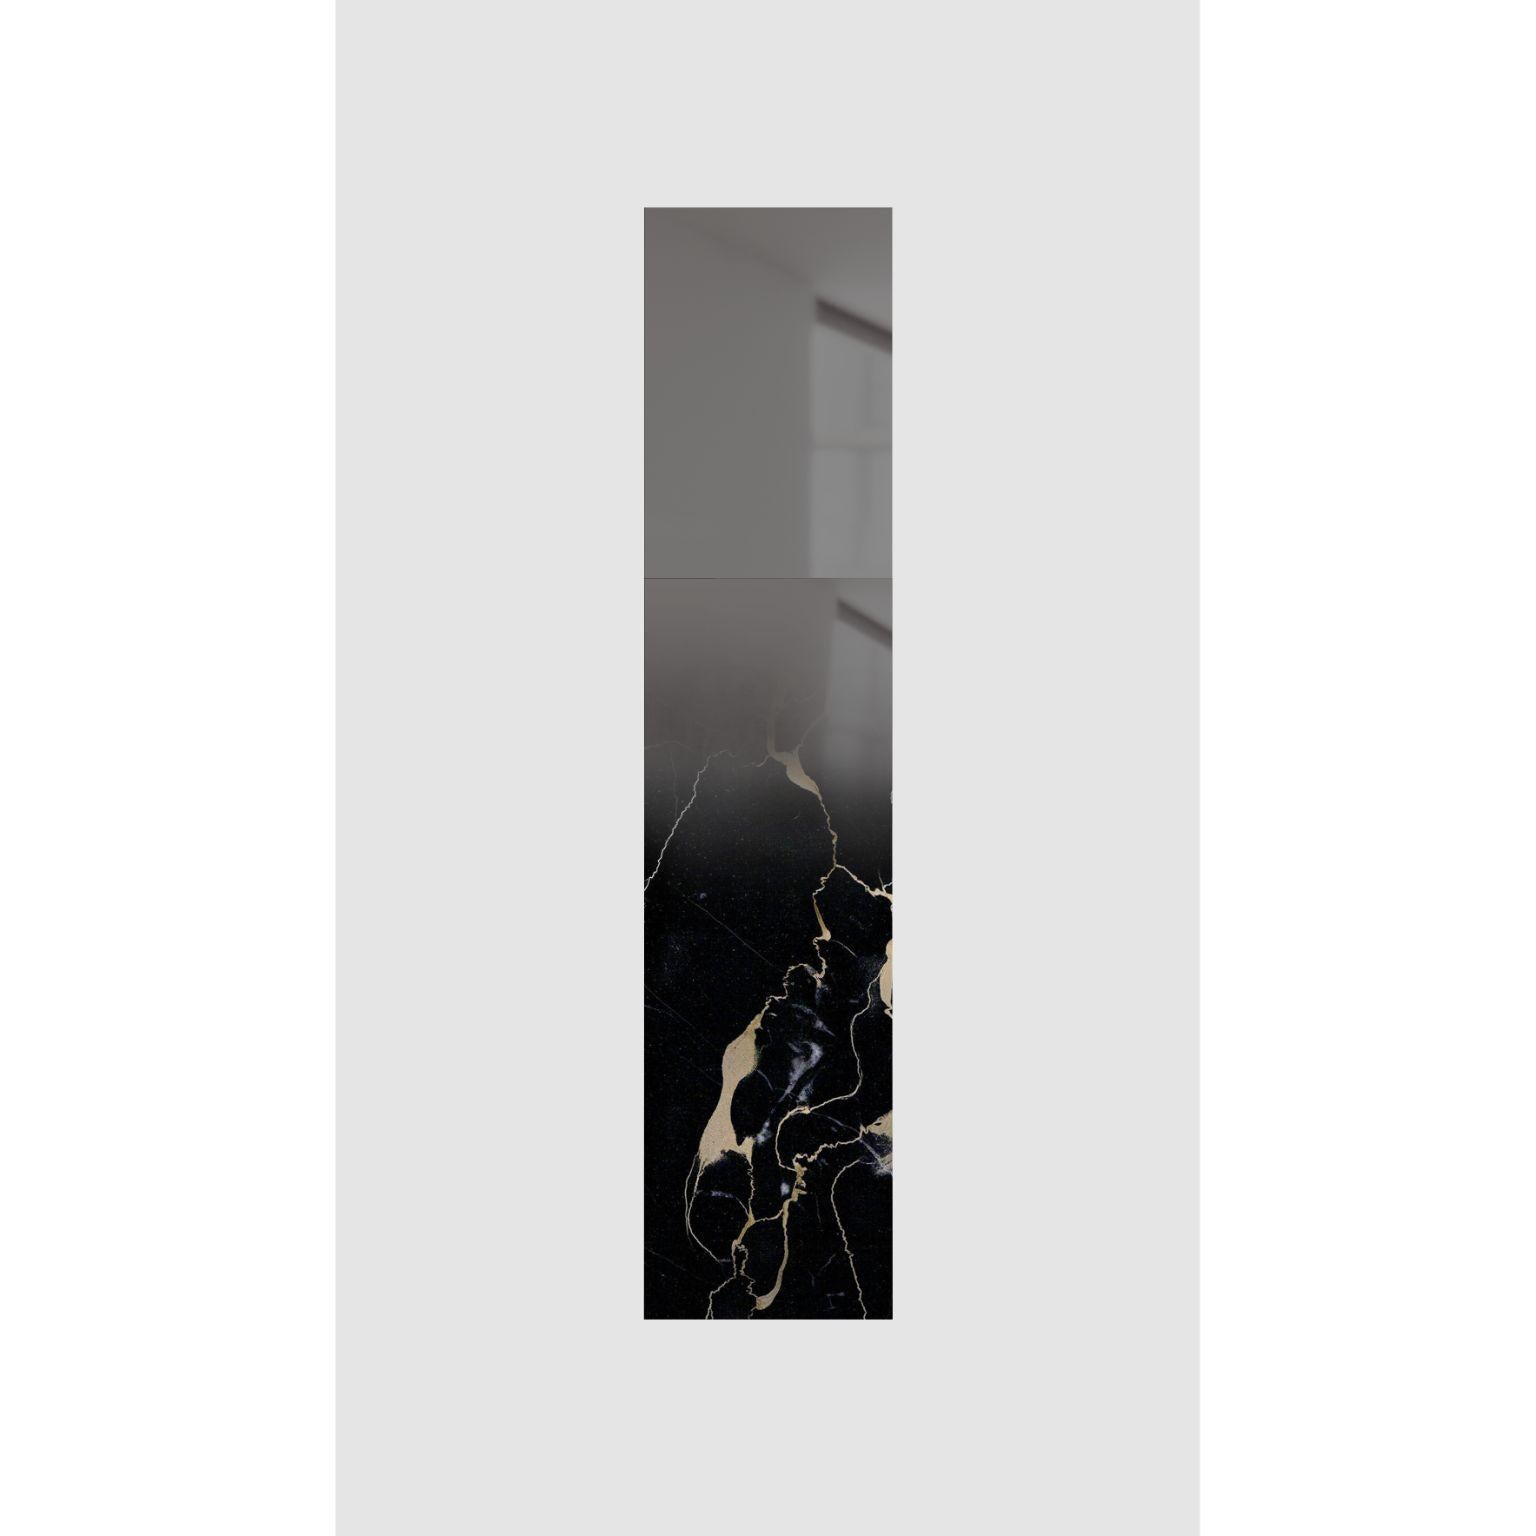 Black Mirror von Formaminima
Limitierte Auflage
Abmessungen: T 5 x B 35 x H 157,5 cm
MATERIALIEN: Extradünner, massiver Portoro-Marmor mit goldener Aderung, handgeschliffene dunkelgraue Kristallschichten mit verblassendem, von Hand aufgetragenem